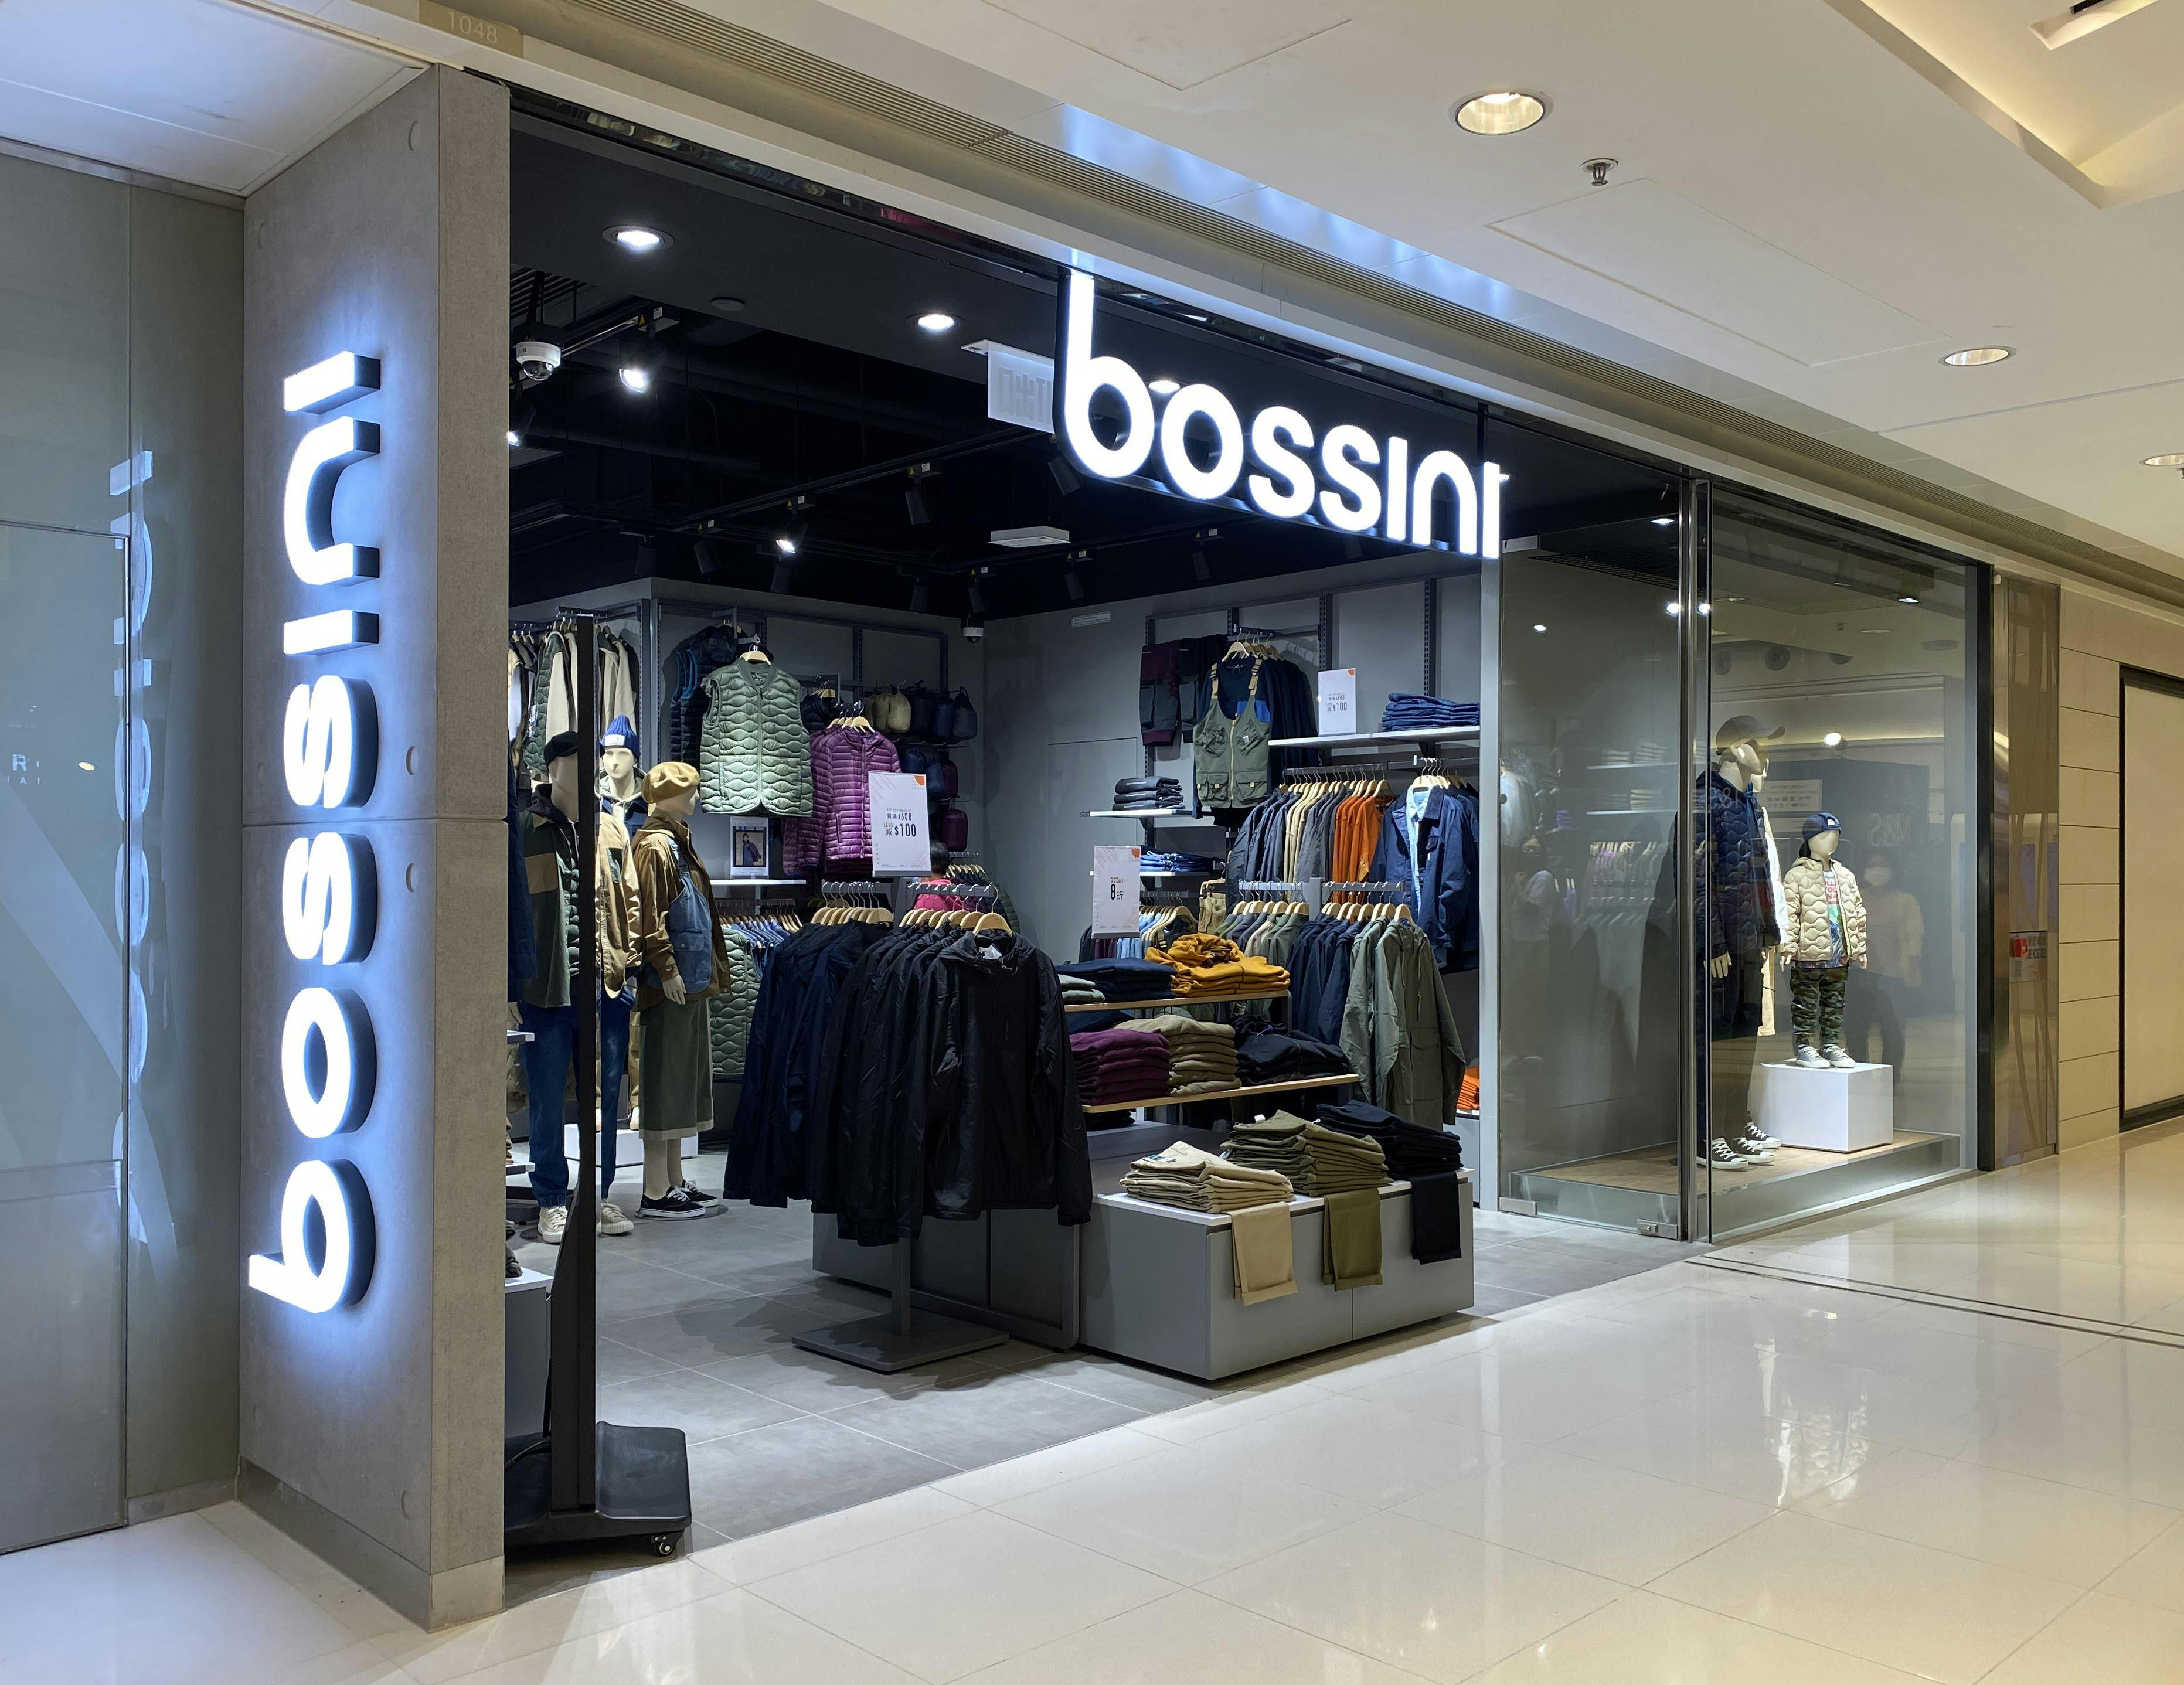 O2O Commerce: Bossini generated 18% membership sales